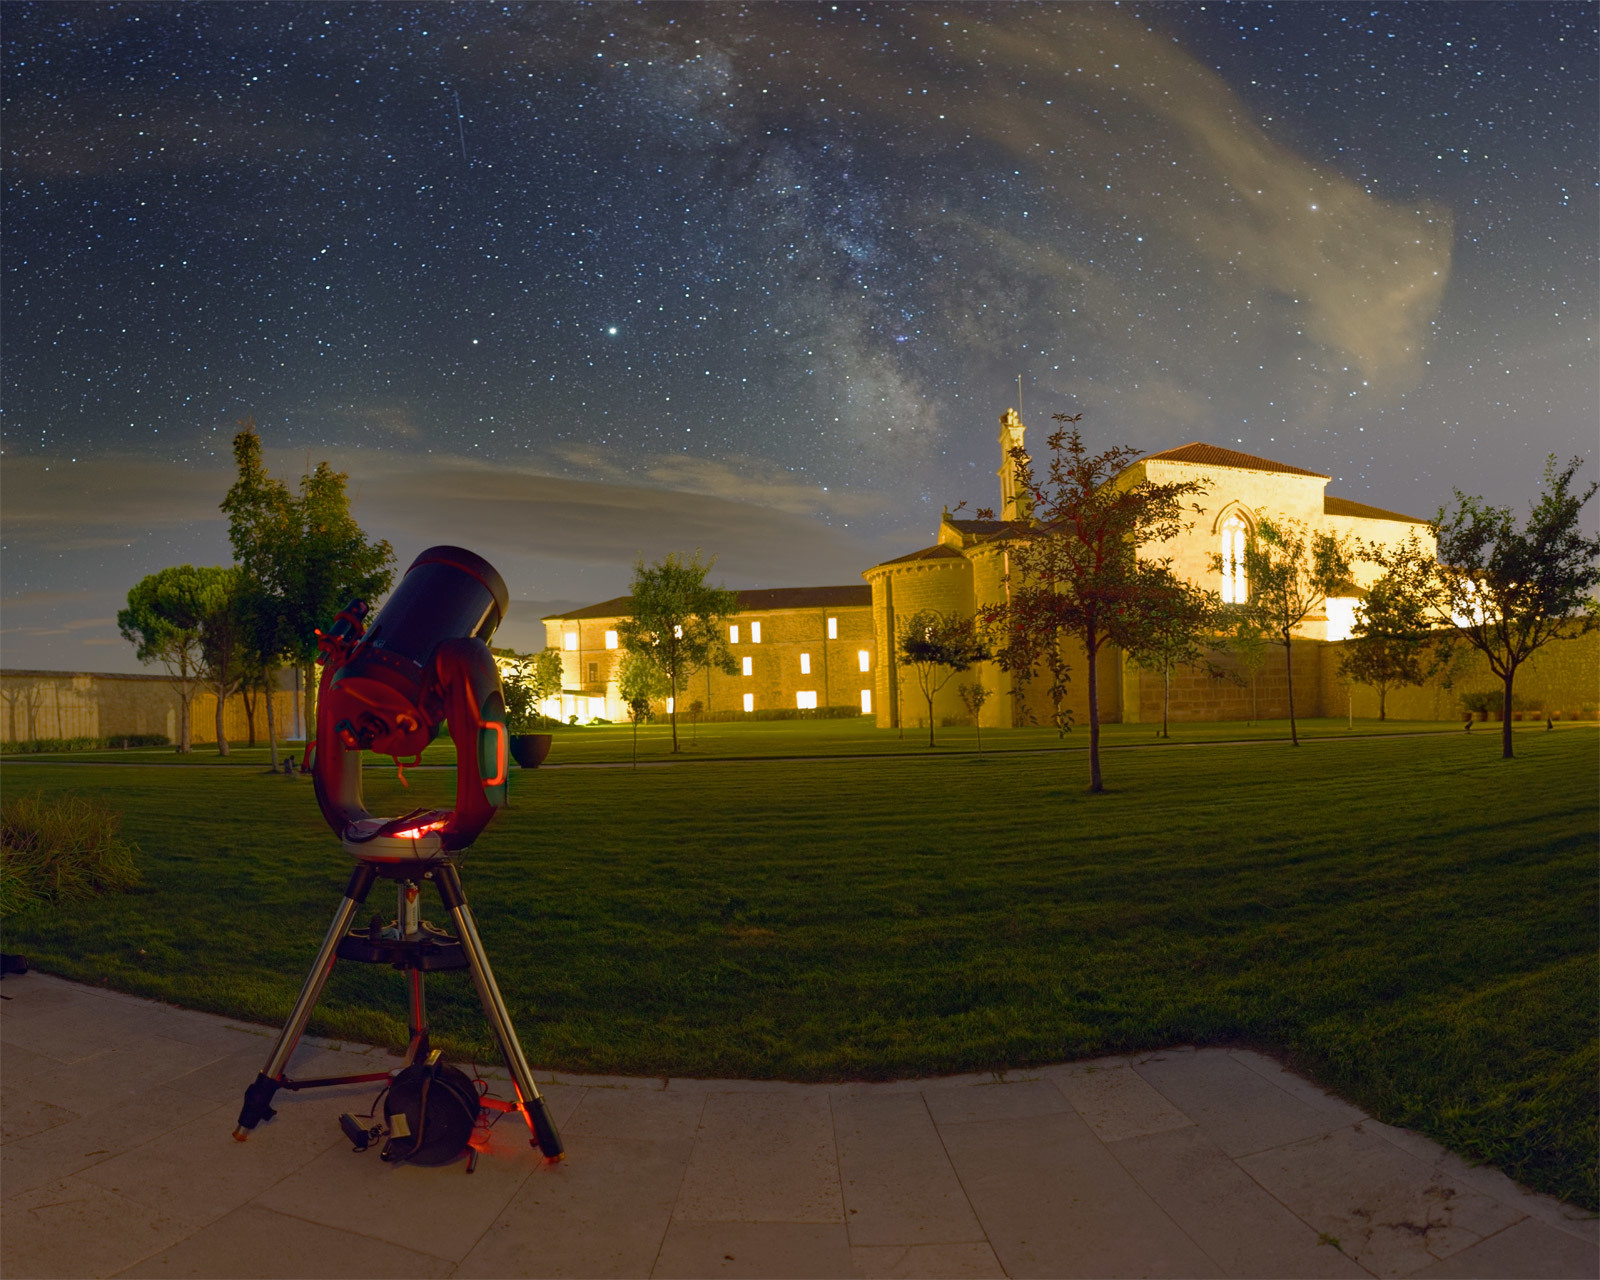 La observación de estrellas es una de las experiencias que ofrece Abadía Retuerta LeDomaine.